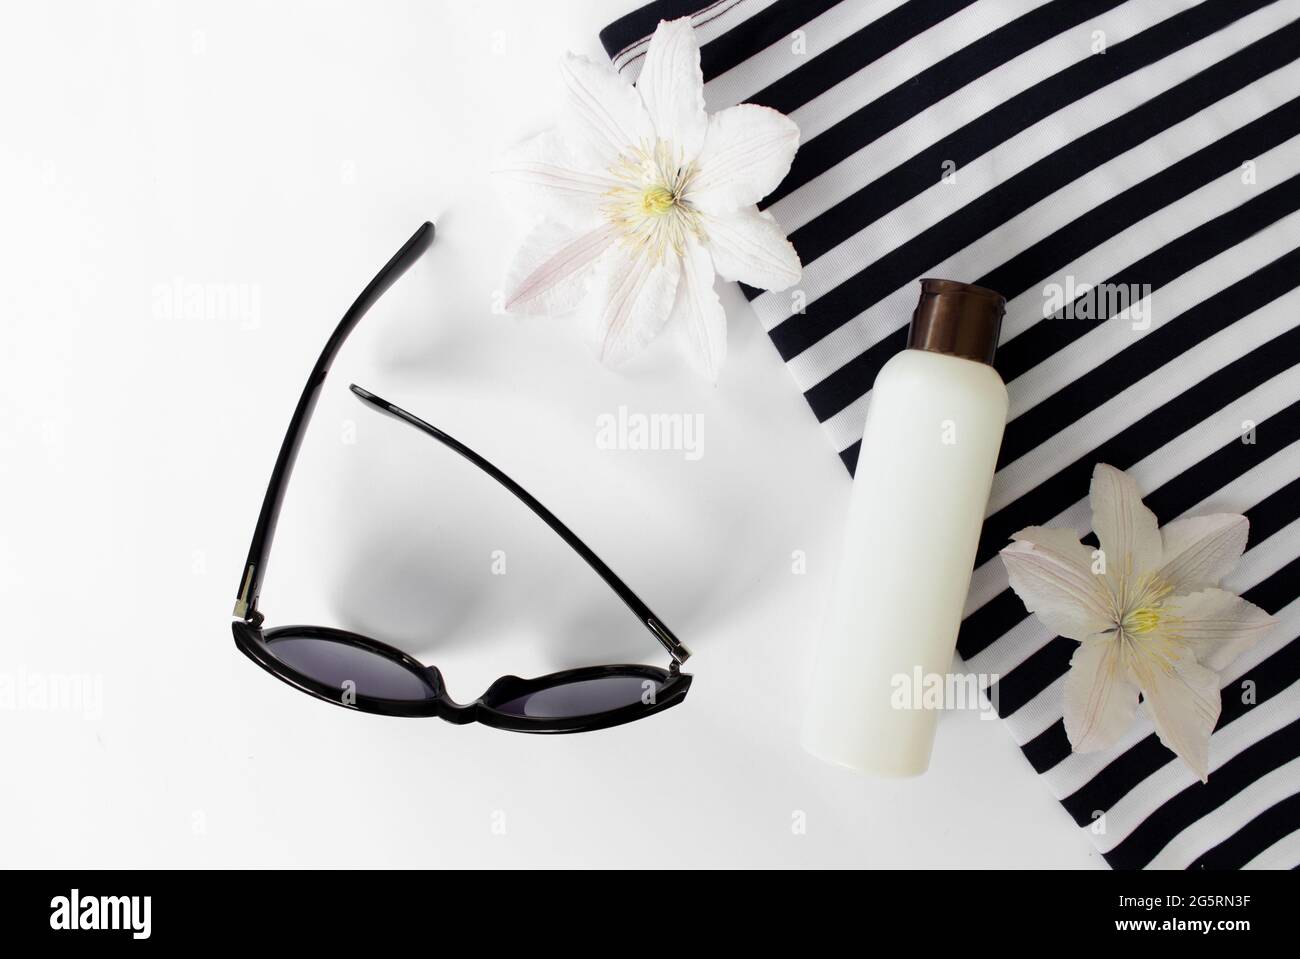 Sommer flach Lay. Sommersandalen, weiße Blumen, Sonnenbrillen und eine weiße Flasche.Draufsicht. Kreativer Hintergrund. Stockfoto